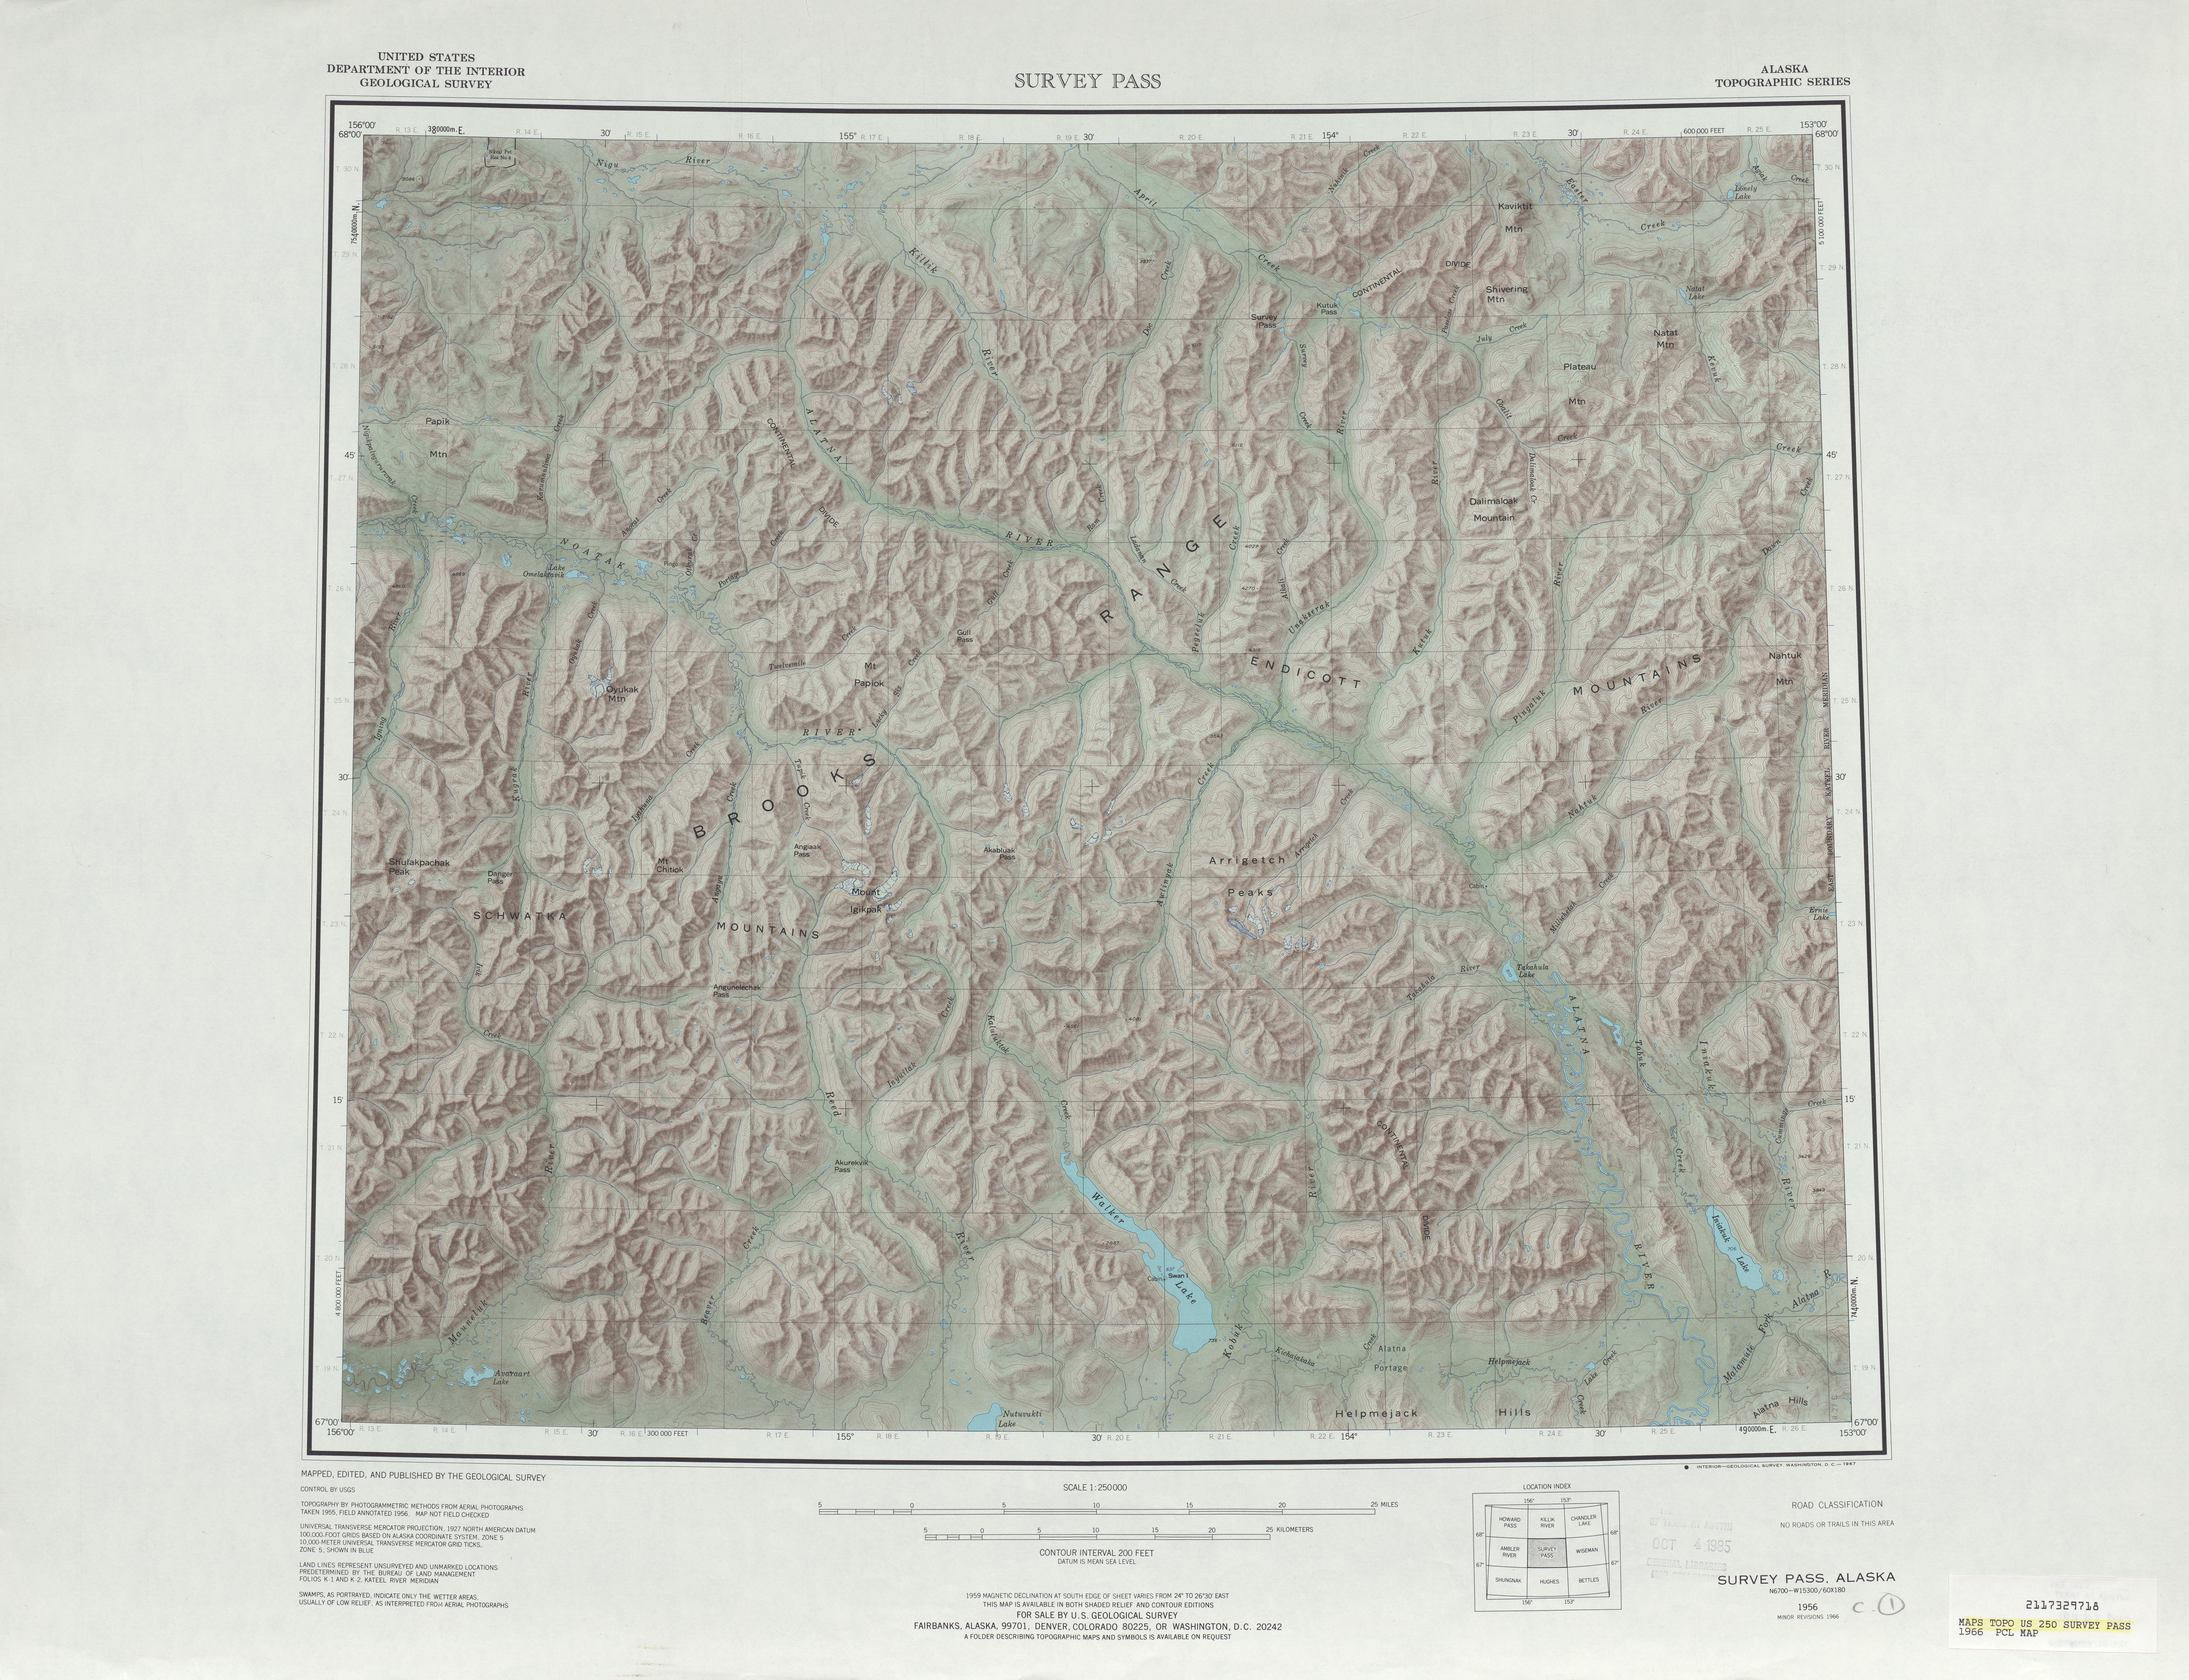 Hoja Survey Pass del Mapa de Relieve Sombreado de los Estados Unidos 1966